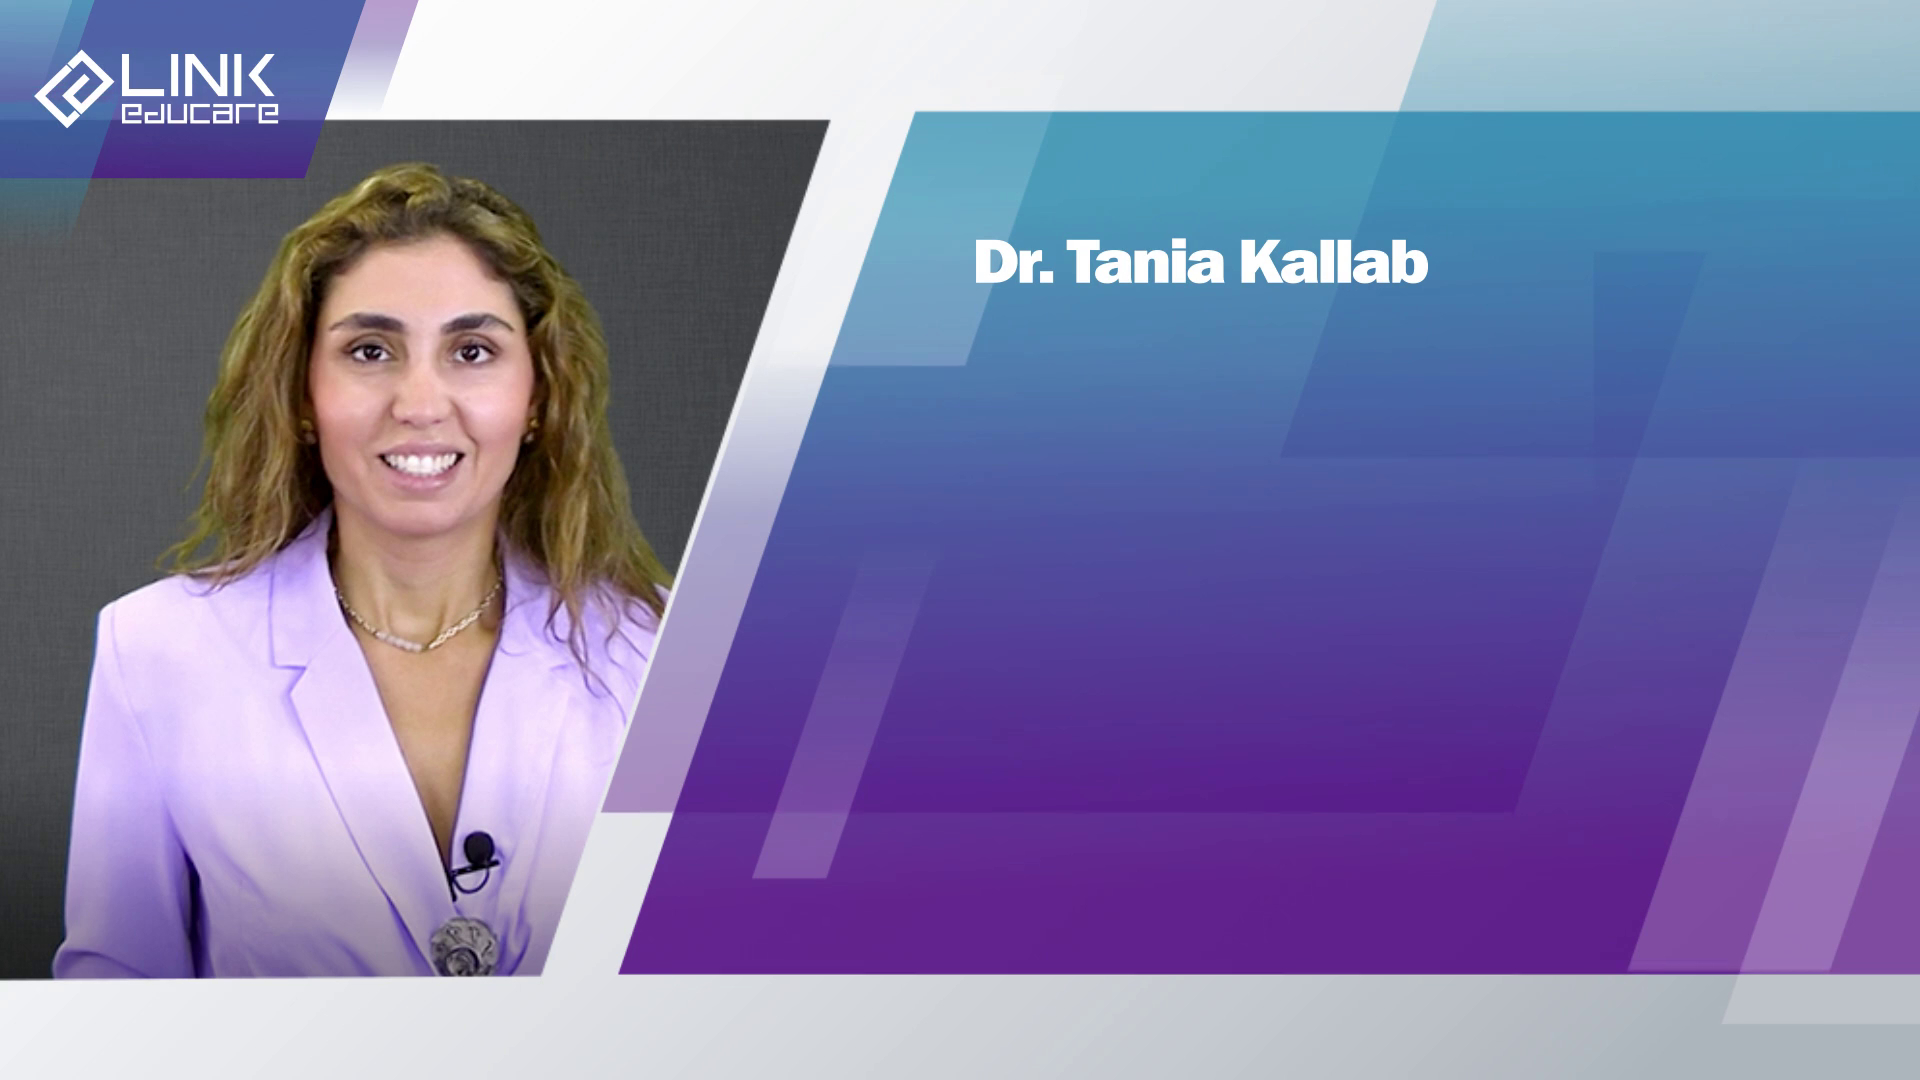 Dr. Tania Kallab